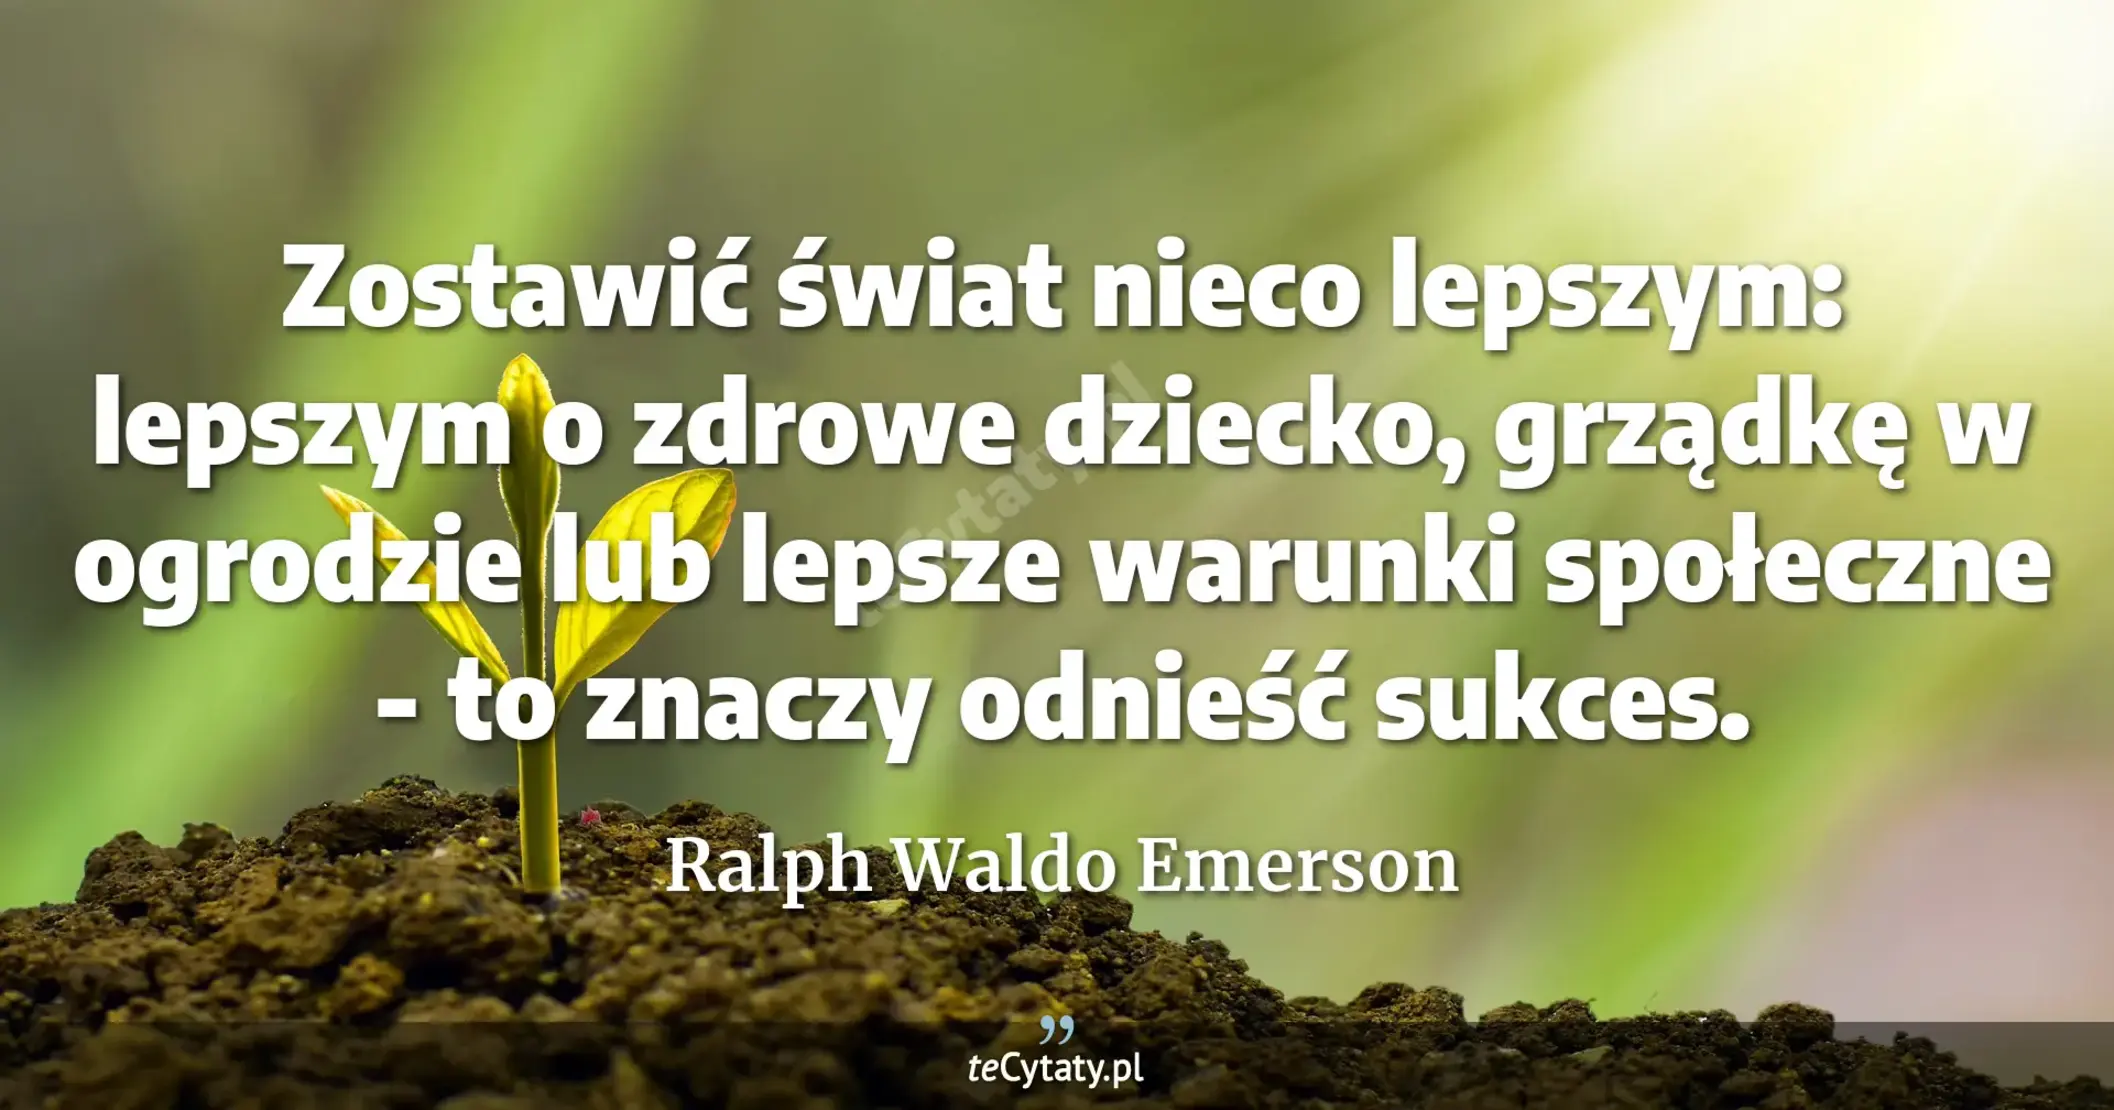 Zostawić świat nieco lepszym: lepszym o zdrowe dziecko, grządkę w ogrodzie lub lepsze warunki społeczne - to znaczy odnieść sukces. - Ralph Waldo Emerson